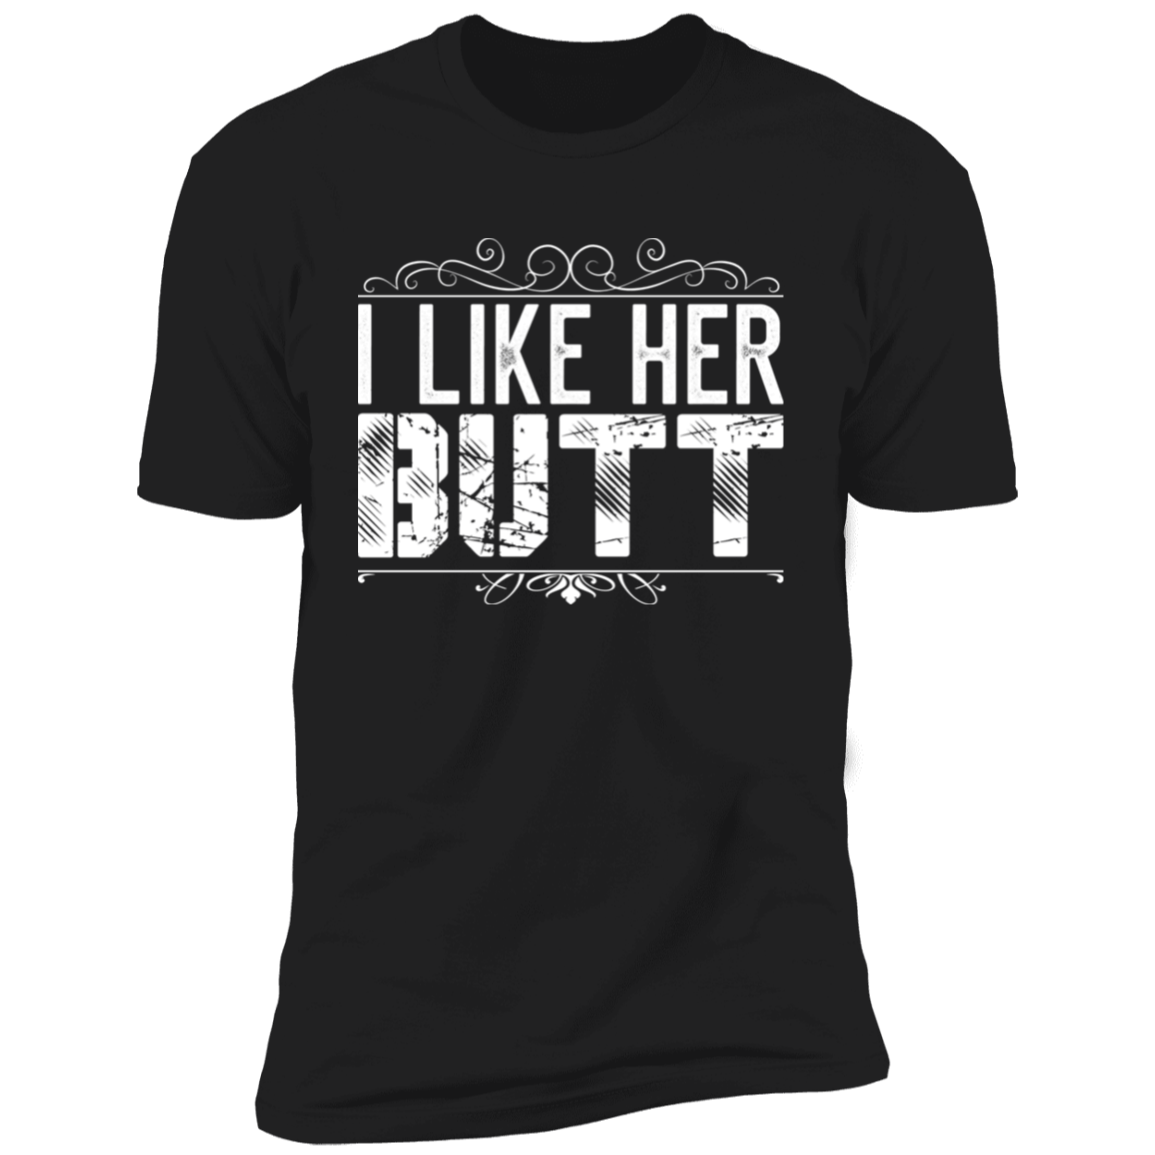 I like her Butt